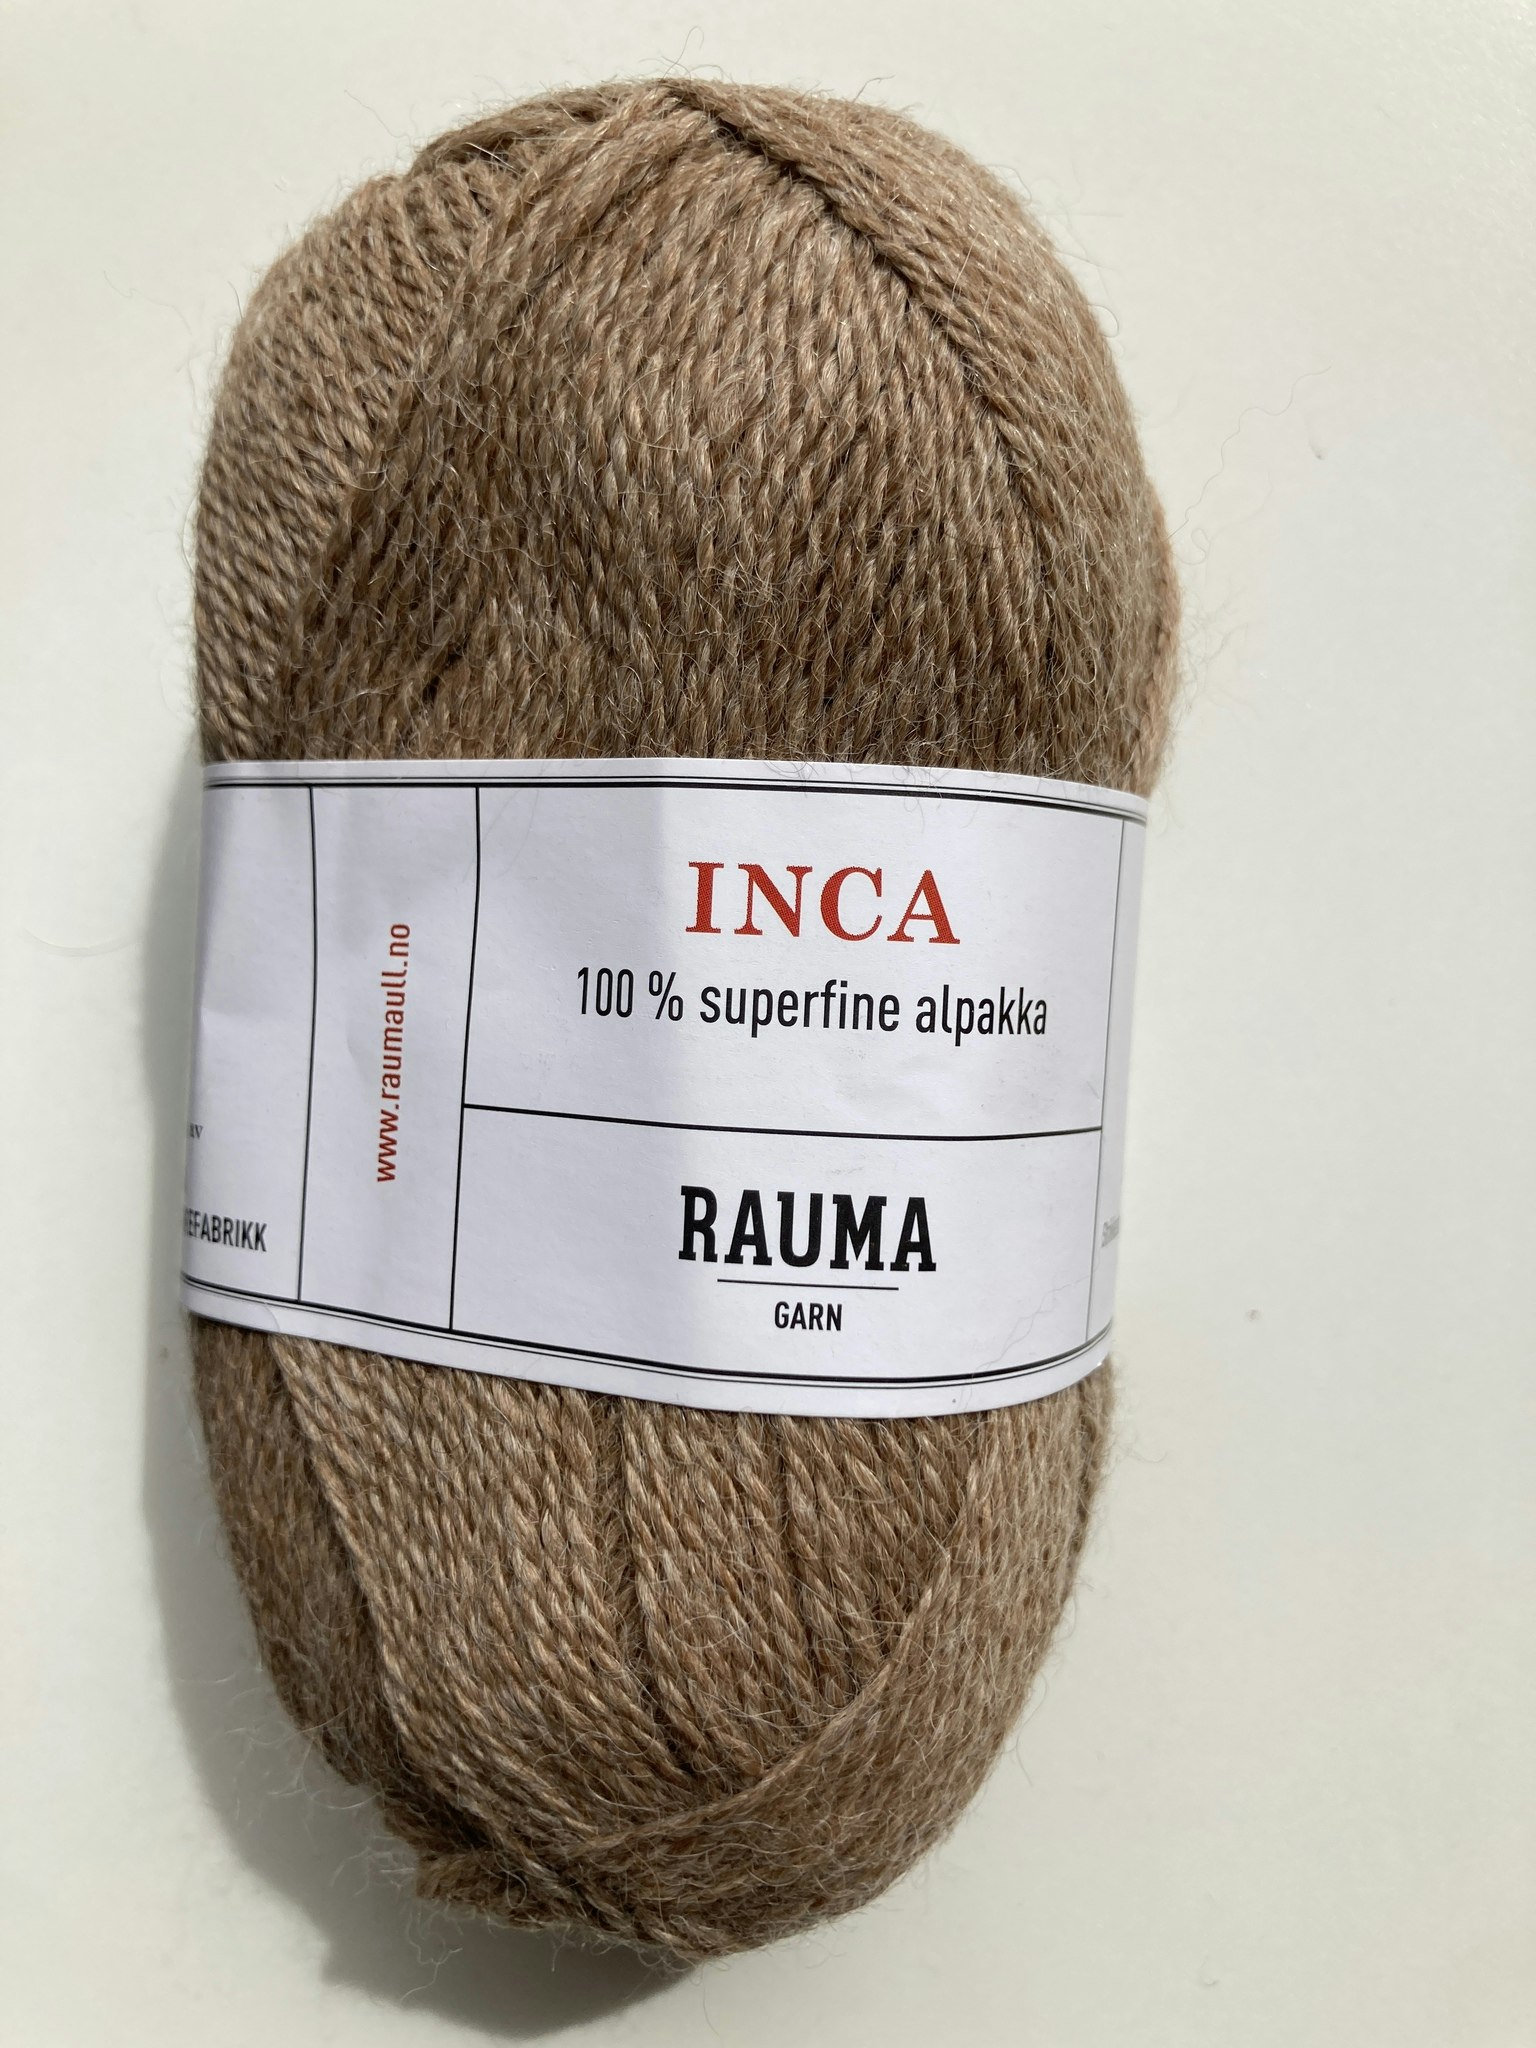 Rauma Inca